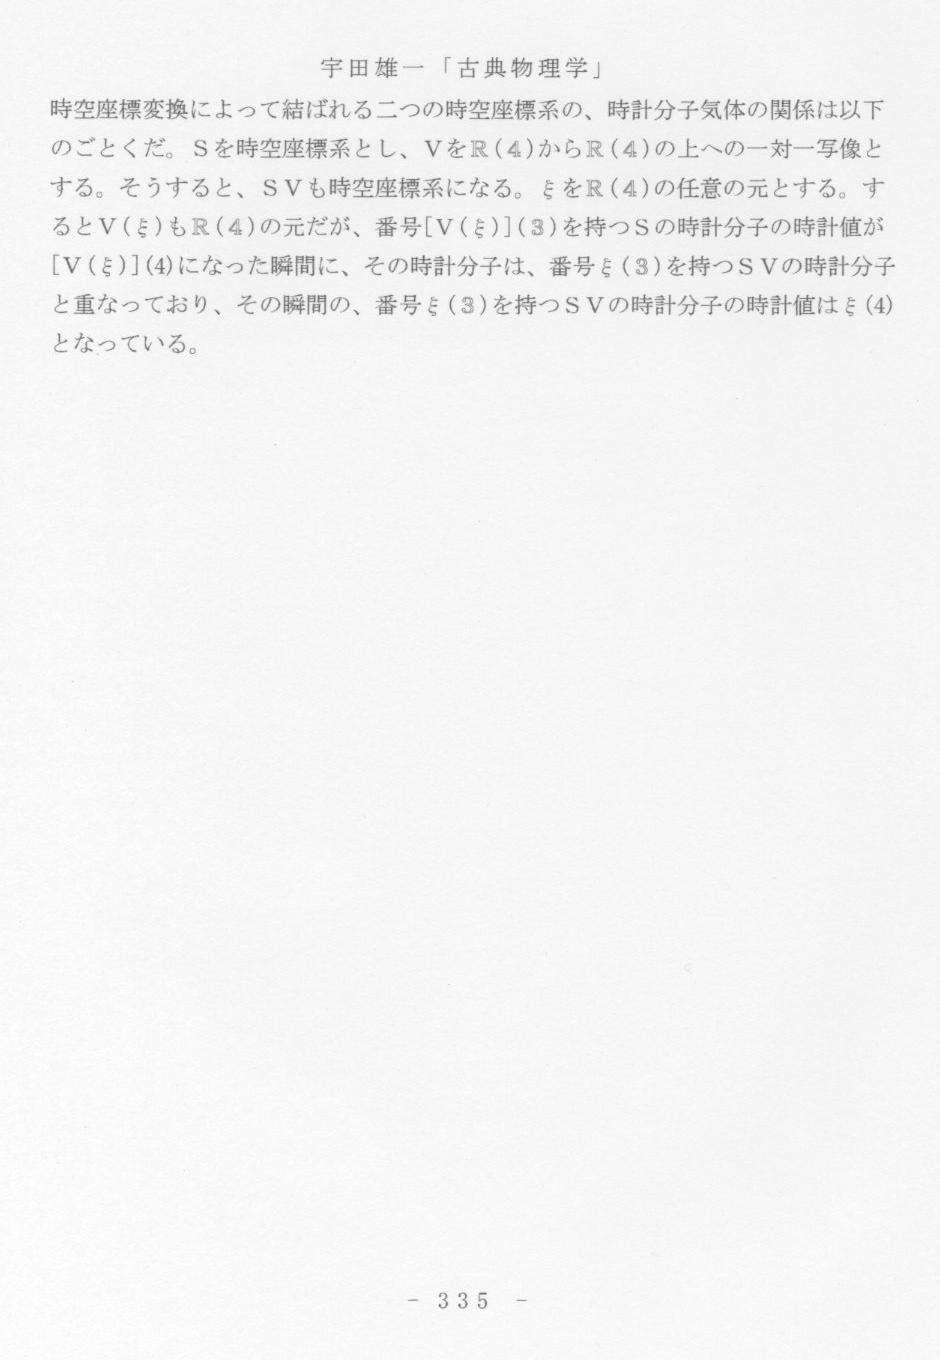 p335 宇田雄一「古典物理学」